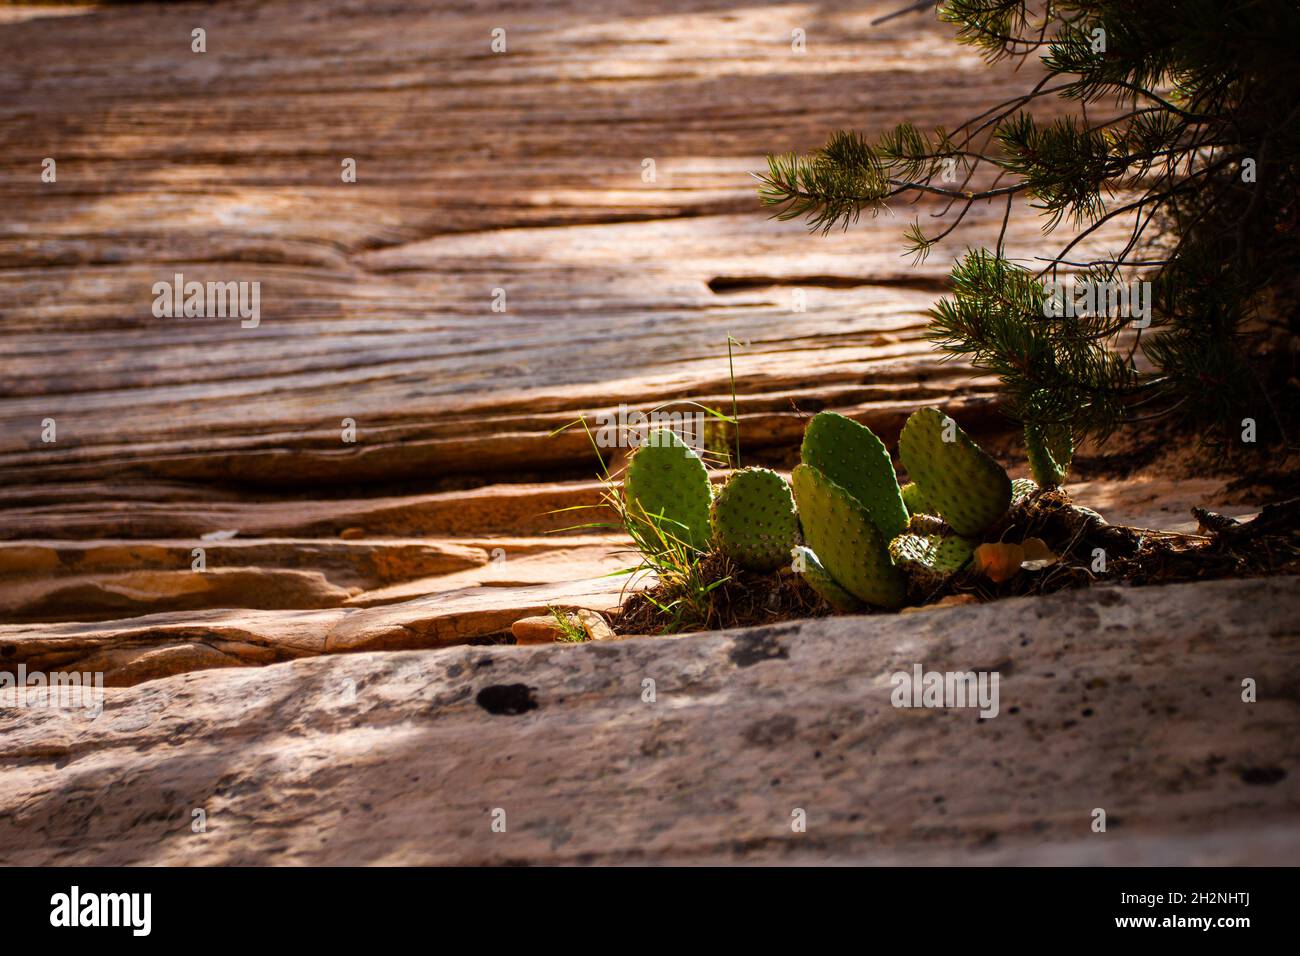 Spineless Kaktus Kaktus Kaktusfeige ohne Früchte in wilder Nahaufnahme Opuntia Kaktus Pflanzen in der Wildnis, die auf Sandsteinschichten an sonnigen Tagen wachsen Stockfoto